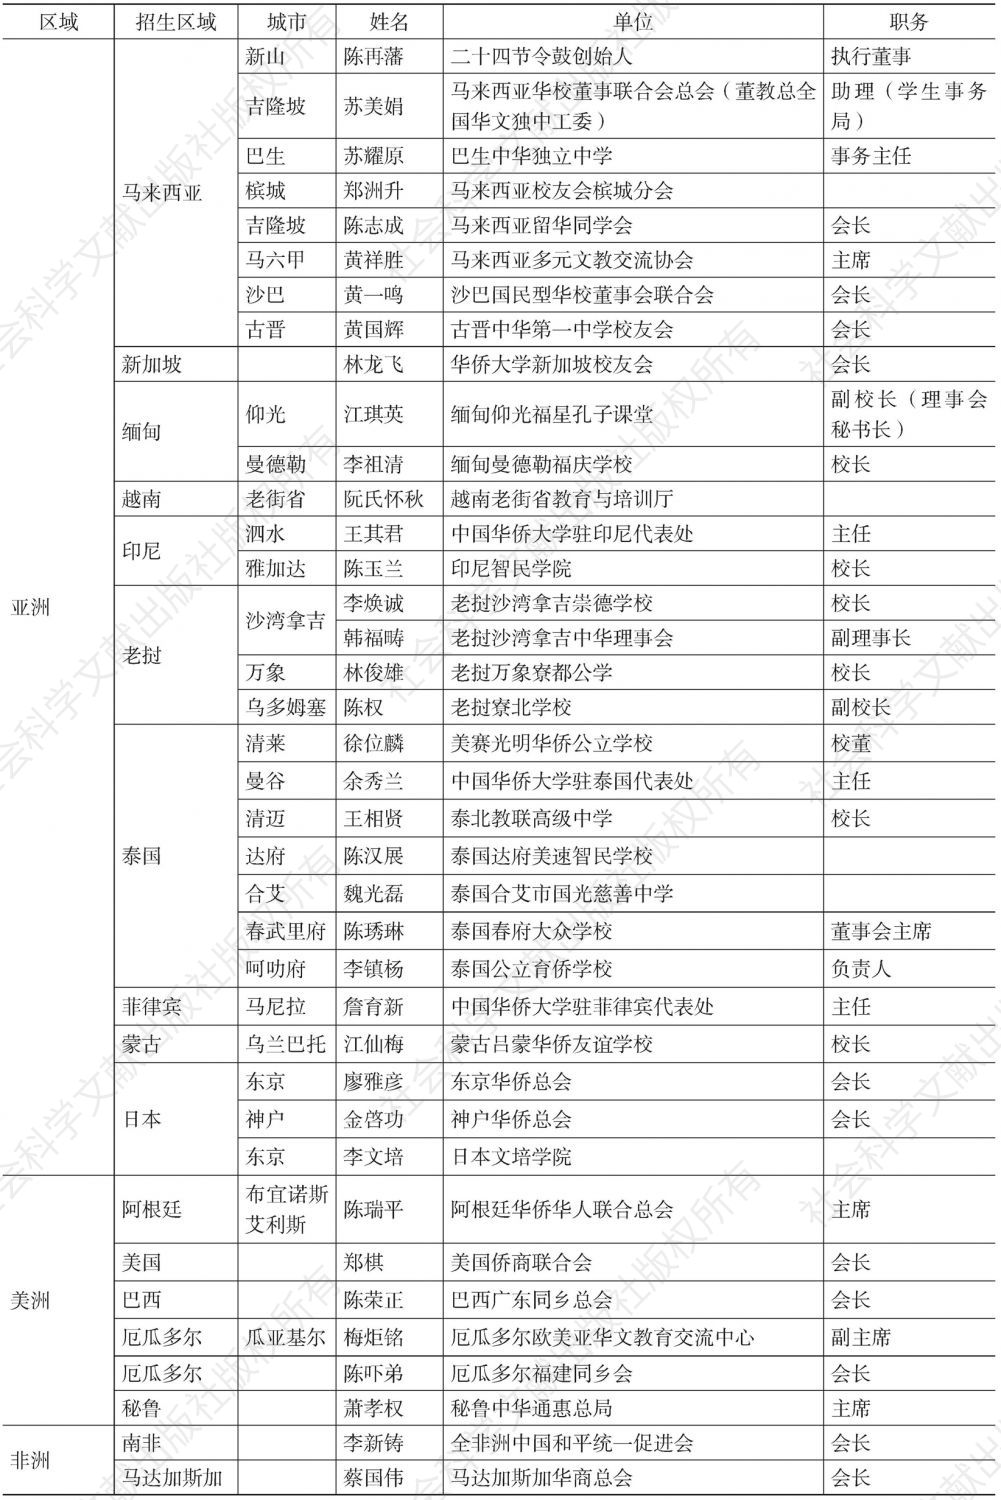 华侨大学海外招生处分布与负责人（本表含2014年度数据）-续表1